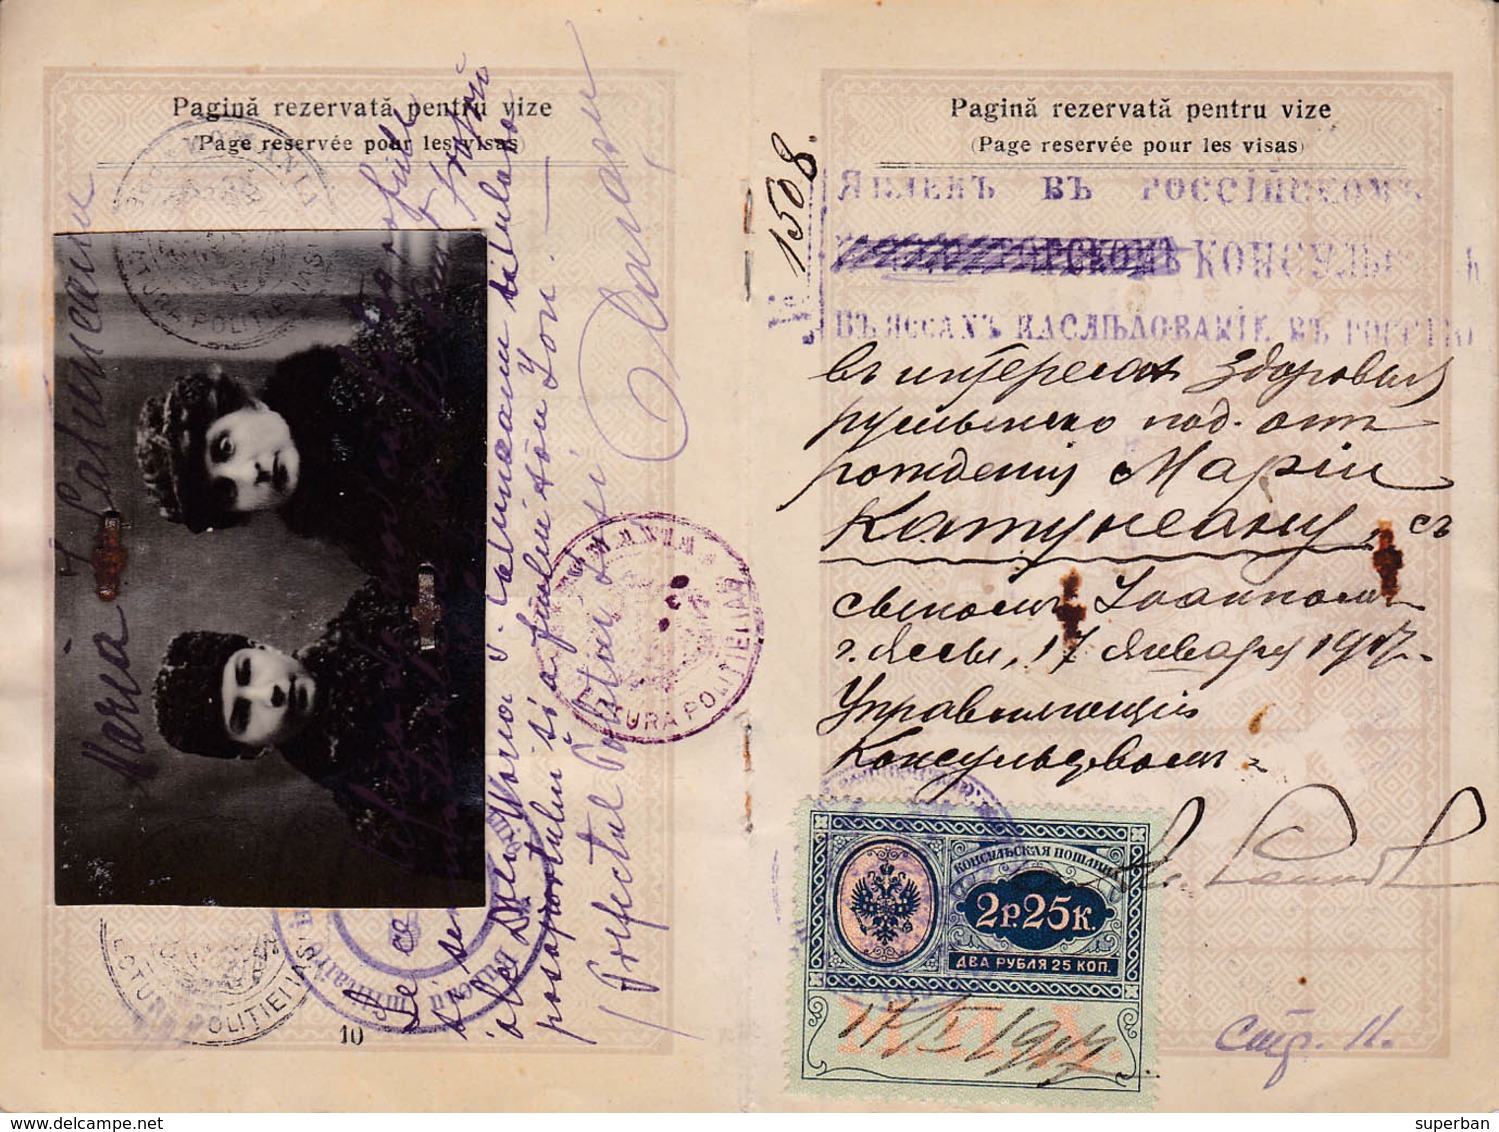 PASSEPORT : ROUMANIE / OLD PASSPORT : ROMANIA - 1916 - TIMBRES et VISAS de RUSSIE / RUSSIAN VISAS & STAMPS - RRR (ab933)